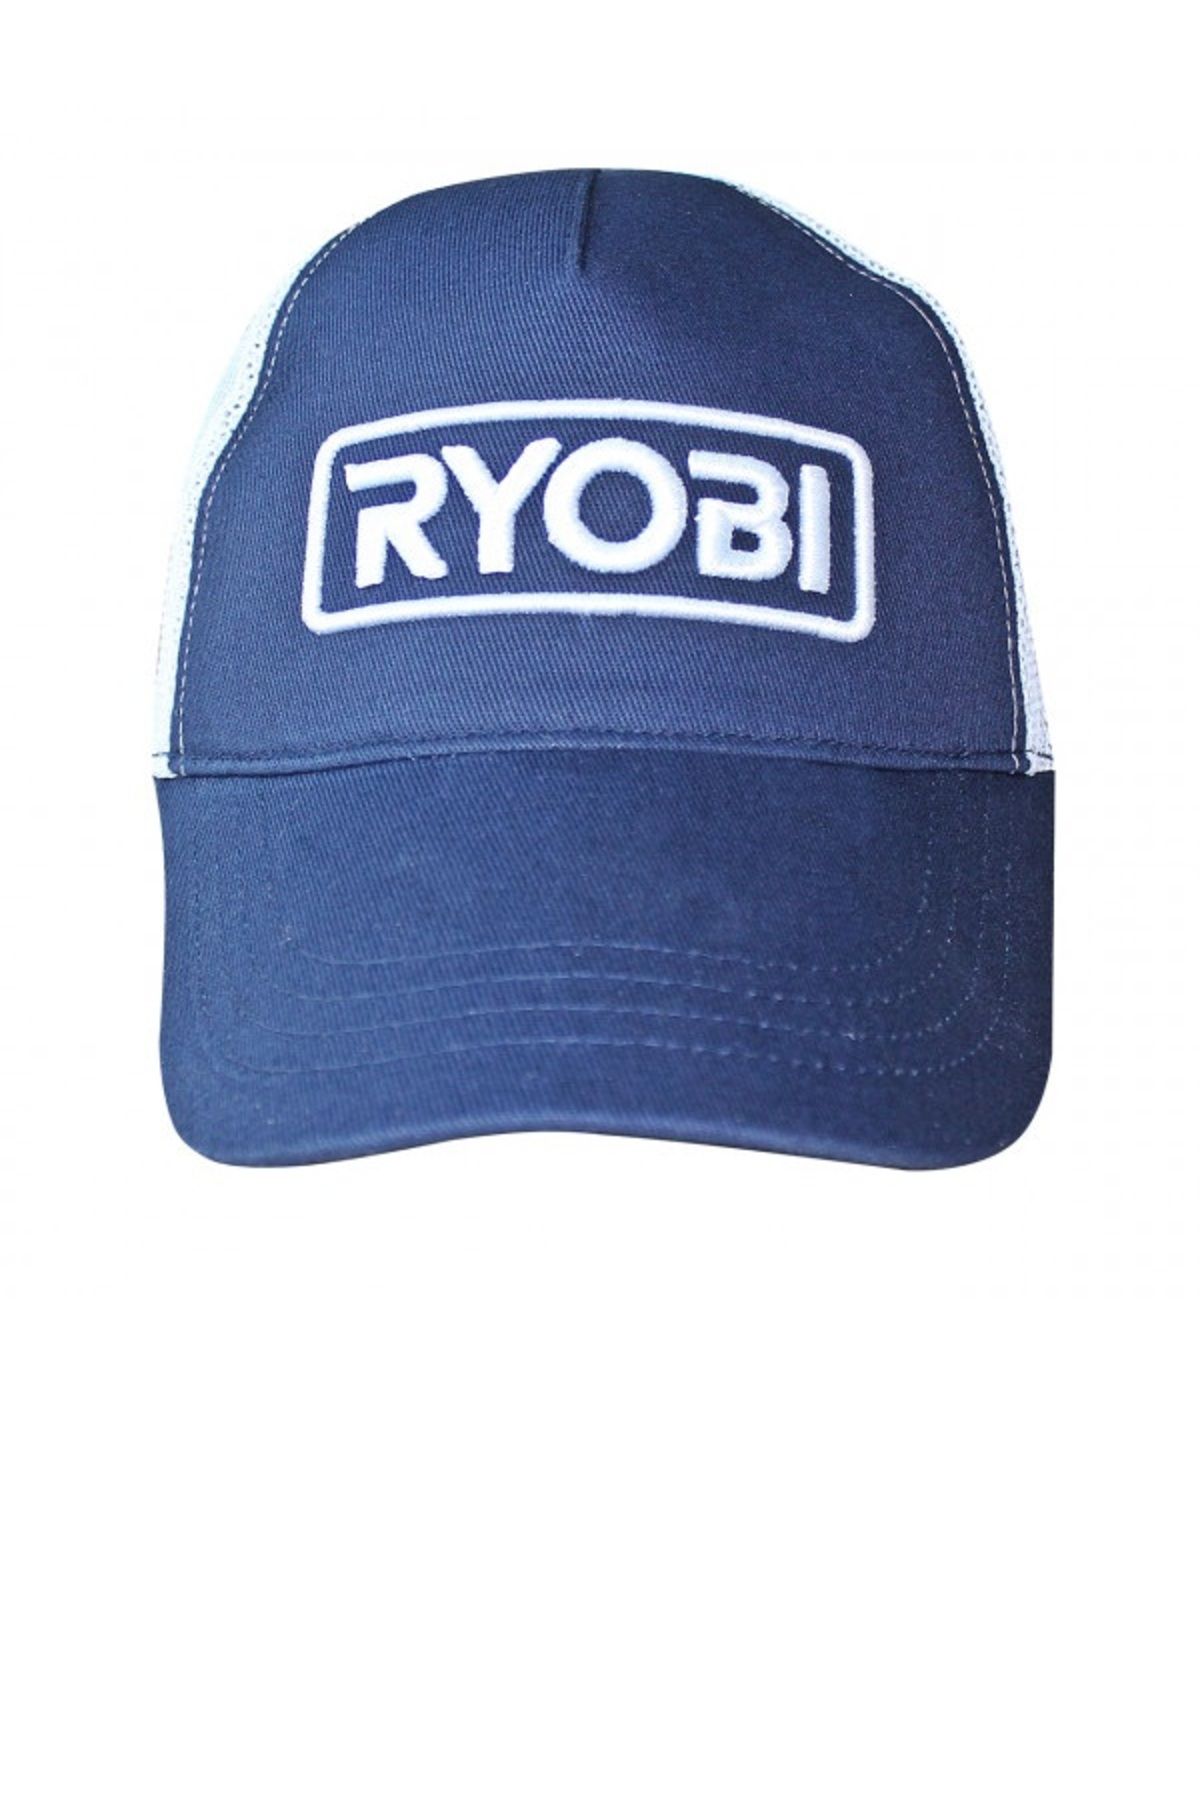 Ryobi Şapka